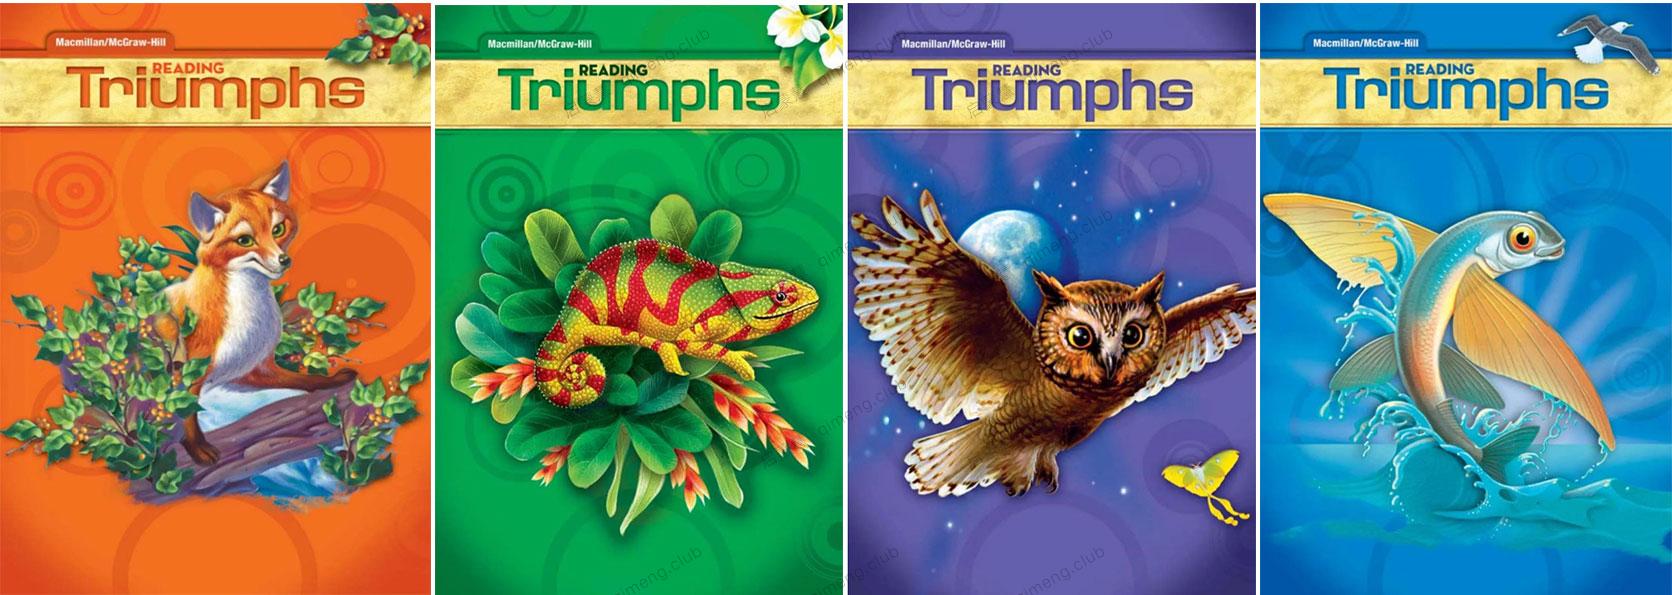 美国小学阅读教材《Reading Triumphs》Gk-G6共7级 学生用书+练习册+教师用书+音频+其他辅助教材